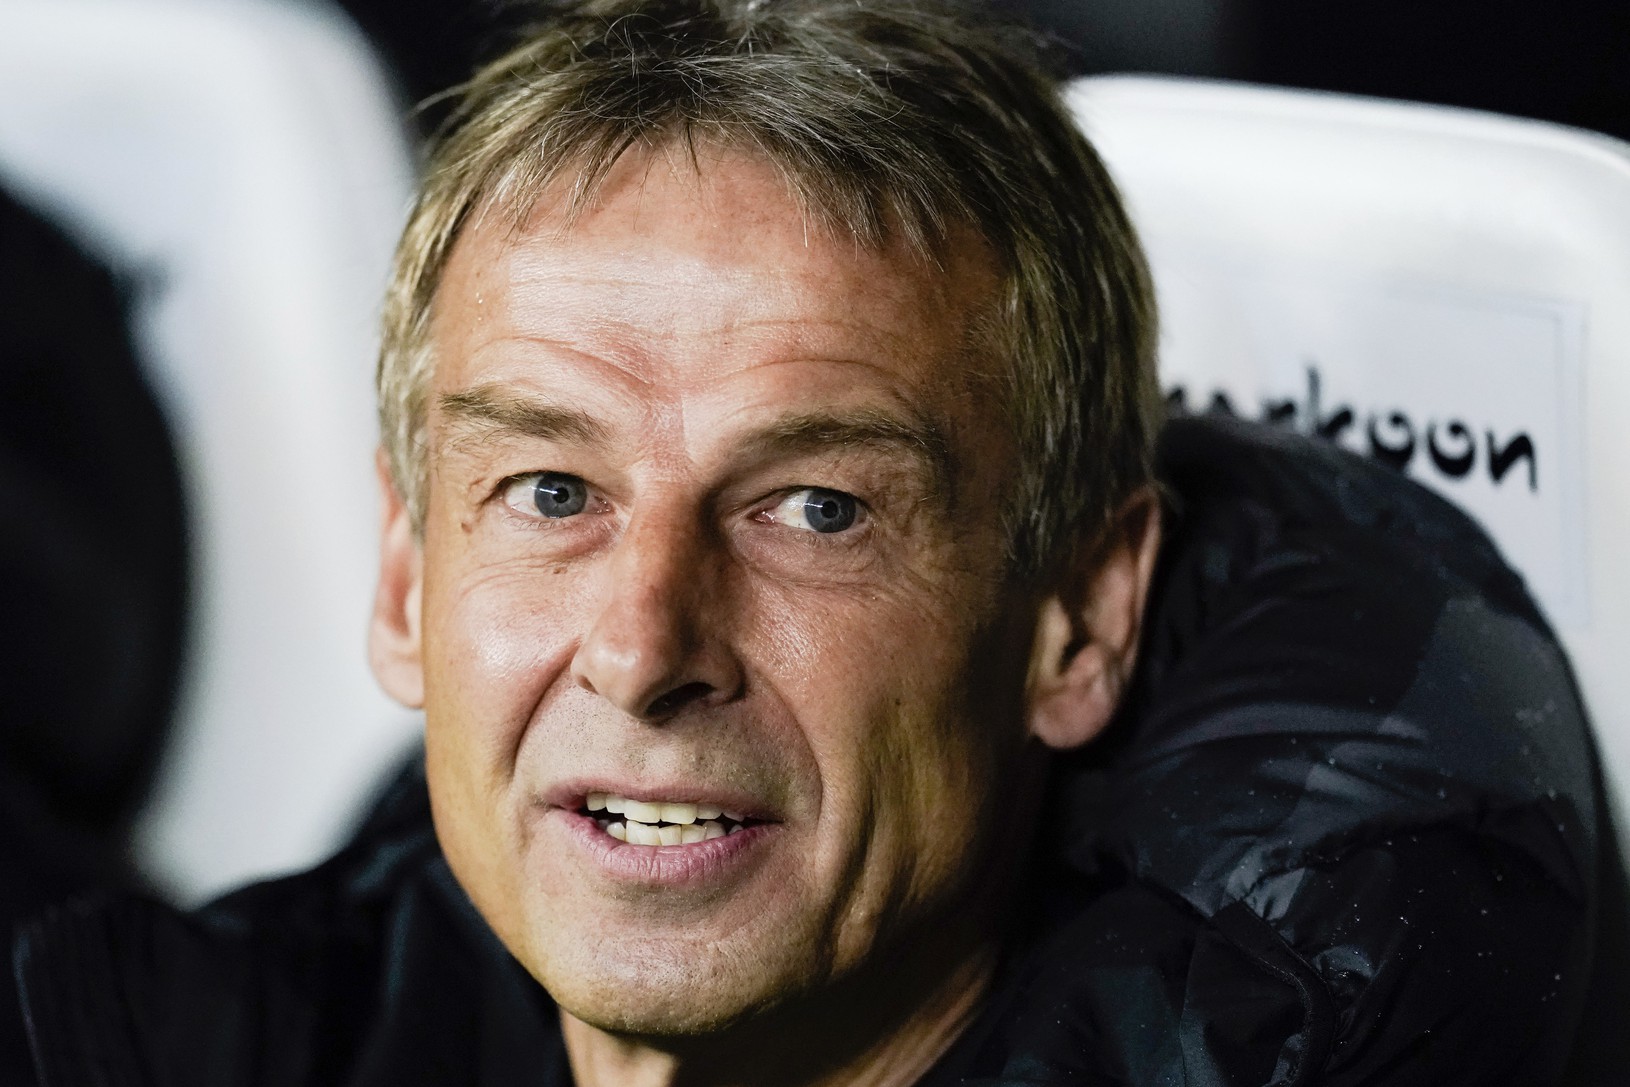 Jürgen Klinsmann